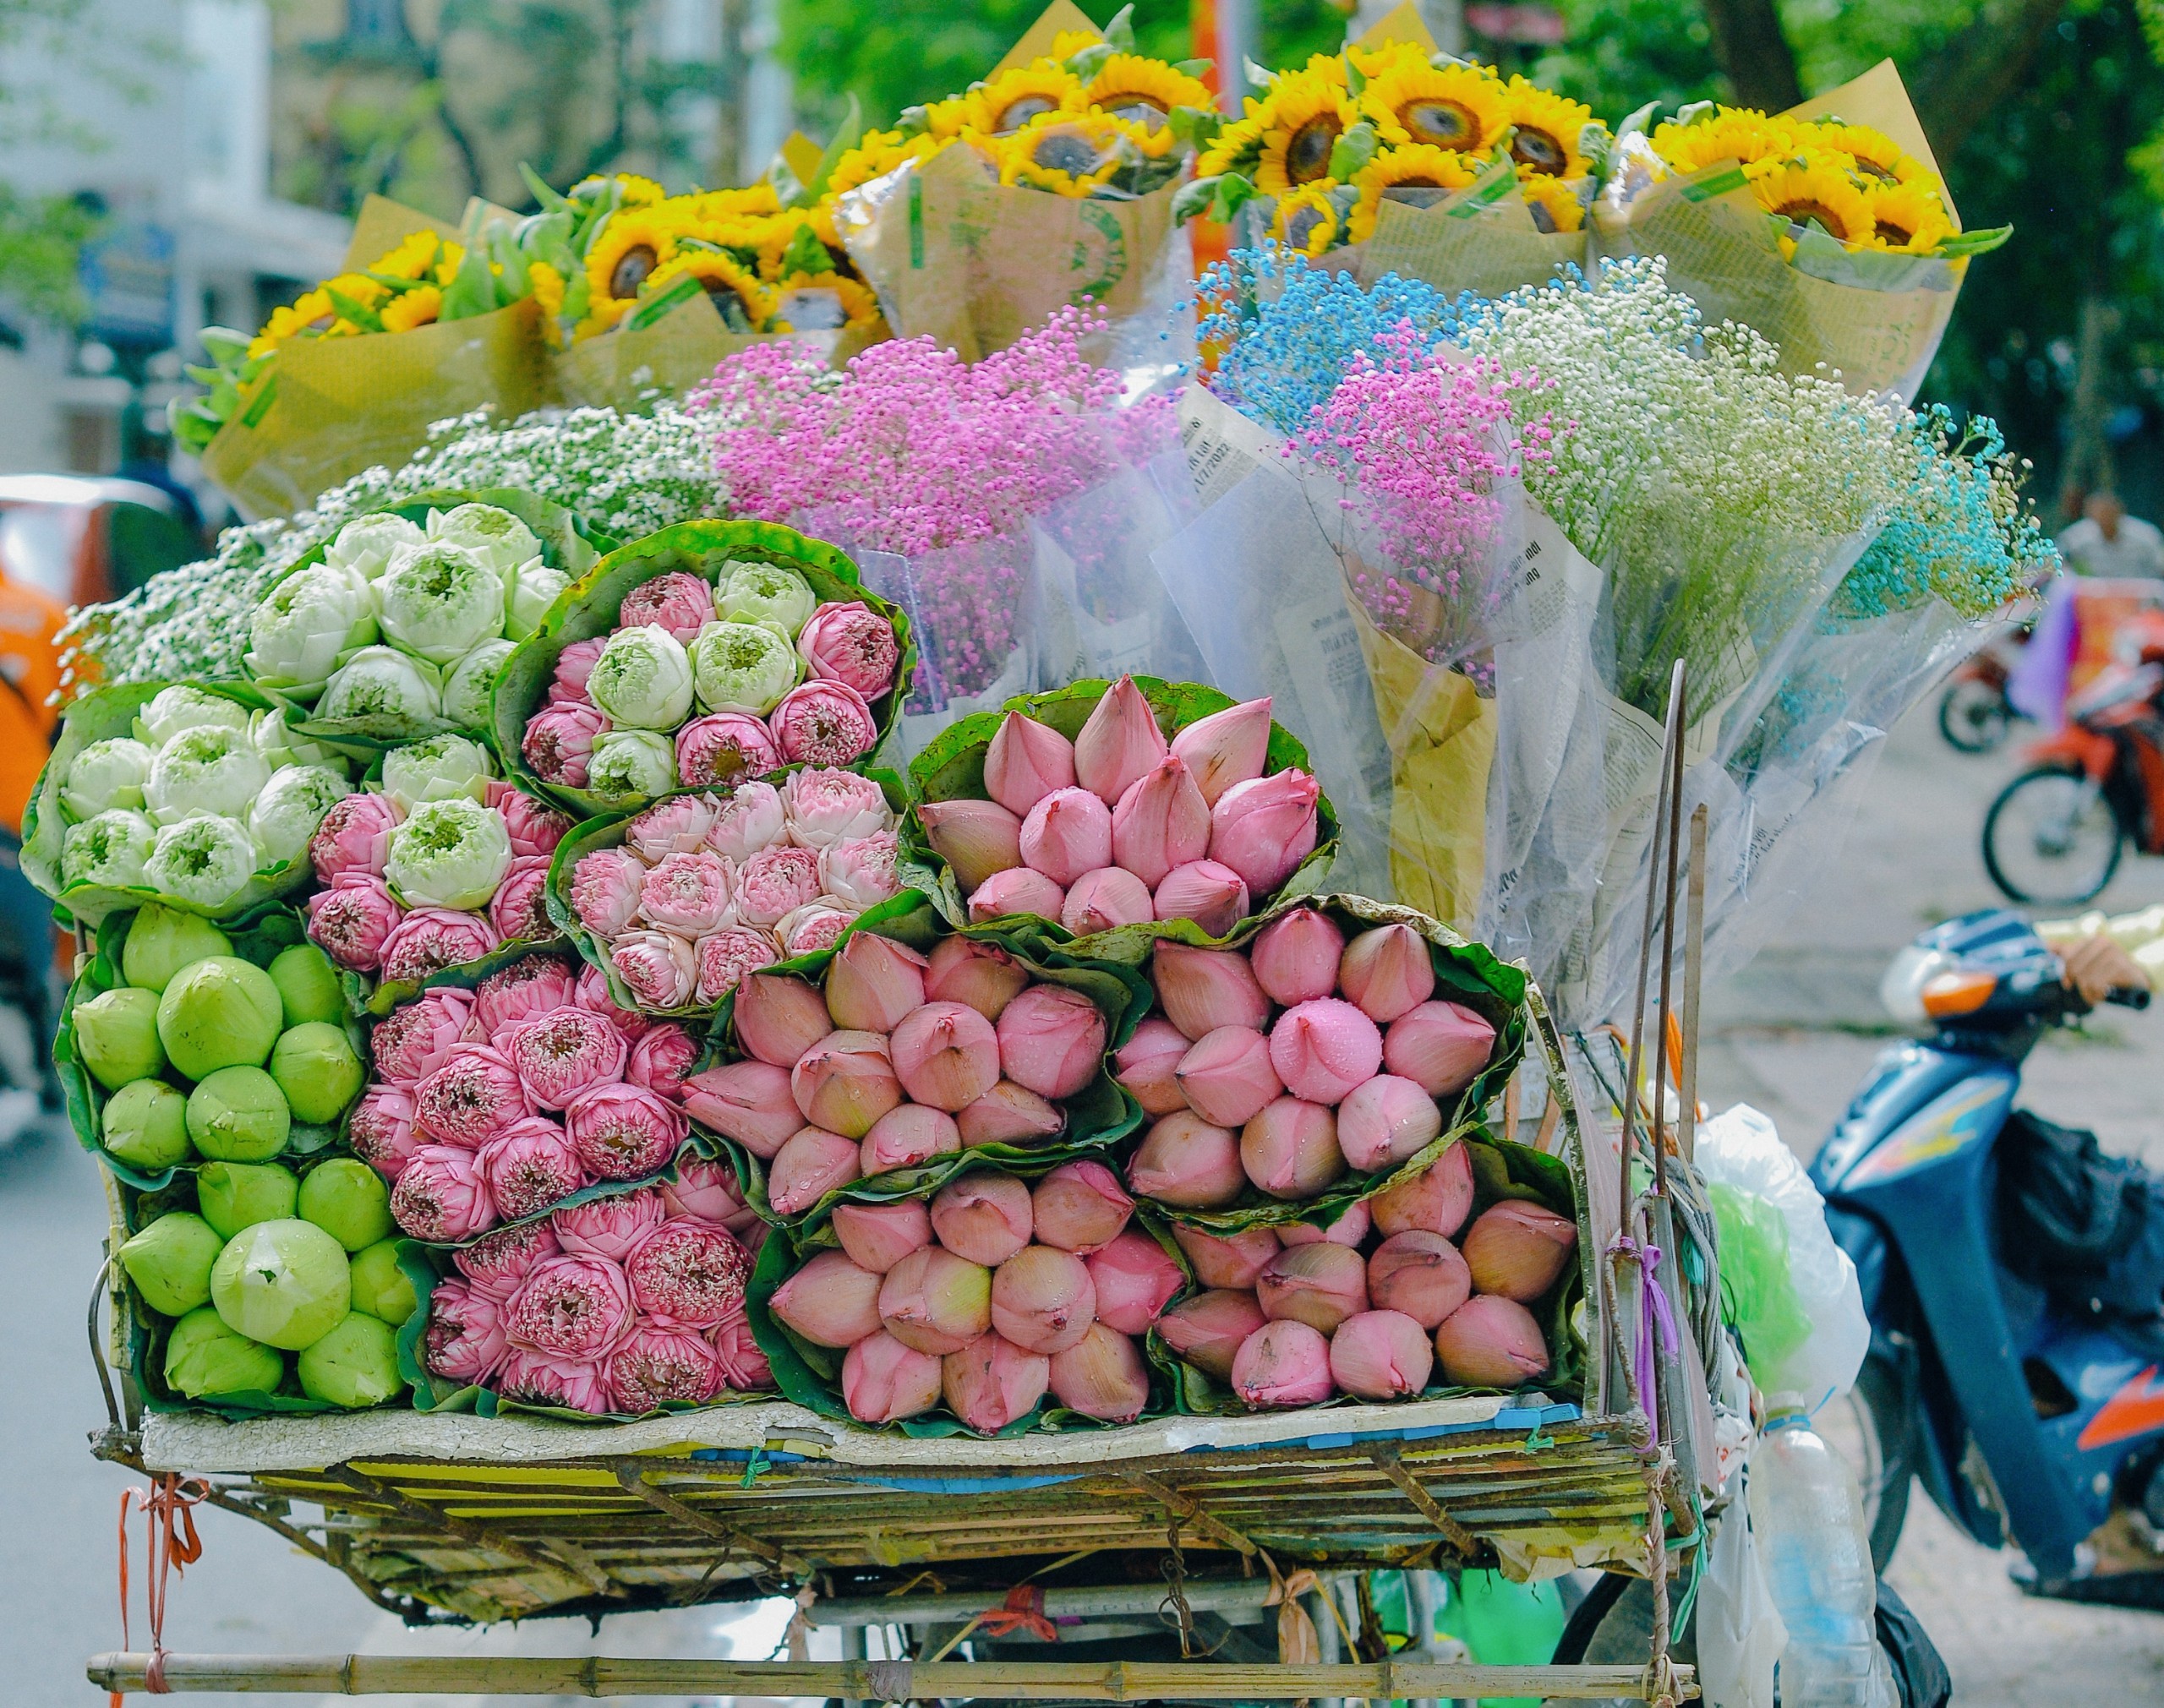 Xe hàng hoa Hà Nội: Những chiếc xe hàng hoa qua đường luôn là một phần không thể thiếu của cuộc sống địa phương. Bạn sẽ bị thu hút bởi những màu sắc tươi đẹp và mùi thơm ngào ngạt của những loại hoa và trái cây đặc trưng được bày bán tại các con đường chợ Hà Nội. Hãy cùng thử các đặc sản địa phương và trải nghiệm cuộc sống của người dân địa phương.